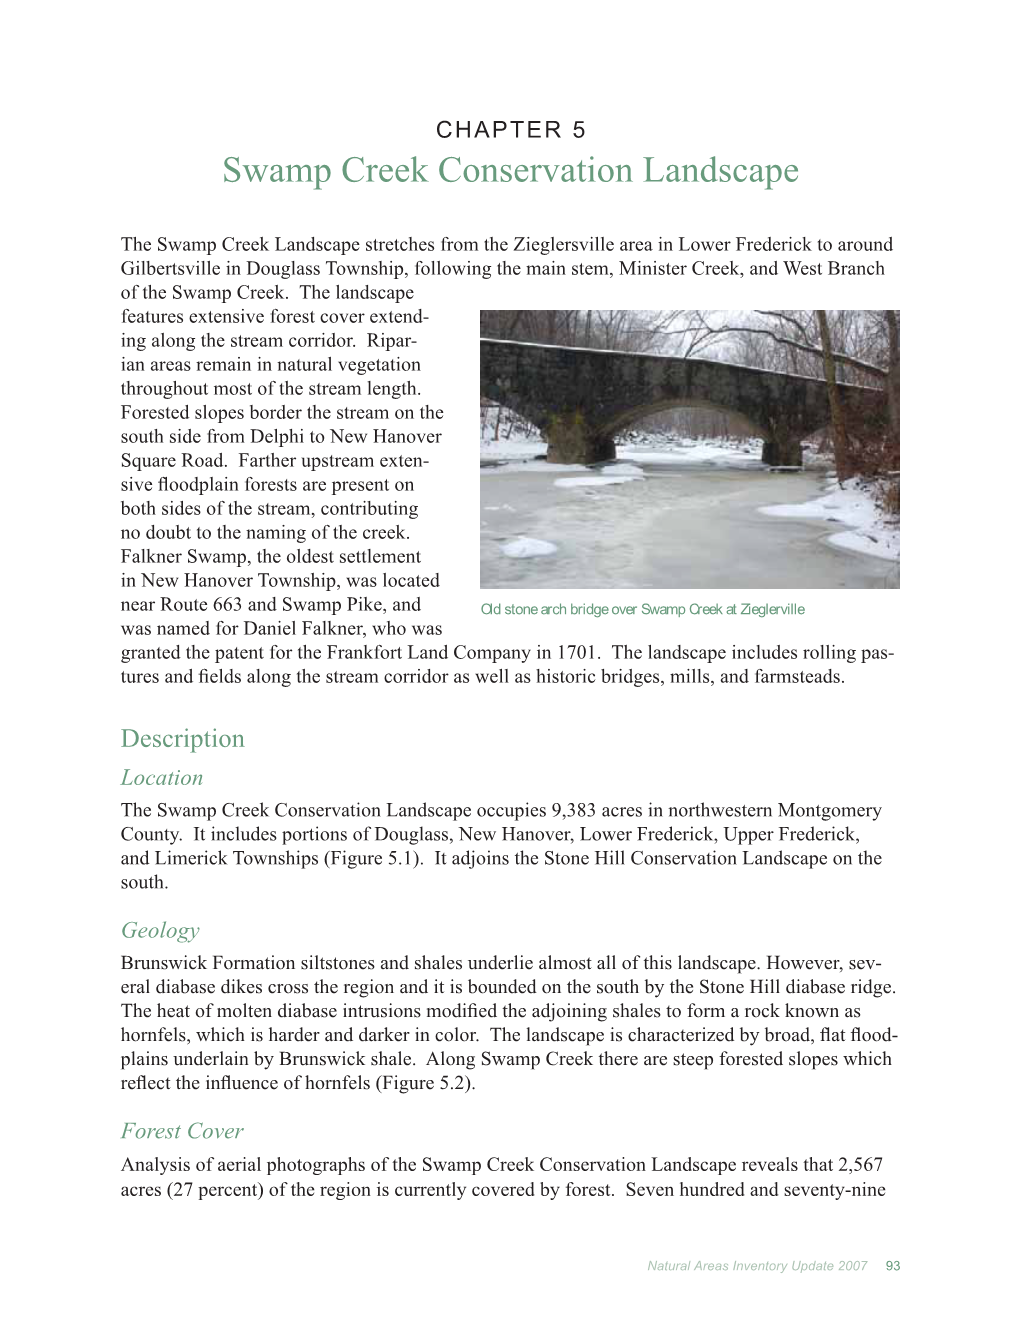 Swamp Creek Conservation Landscape